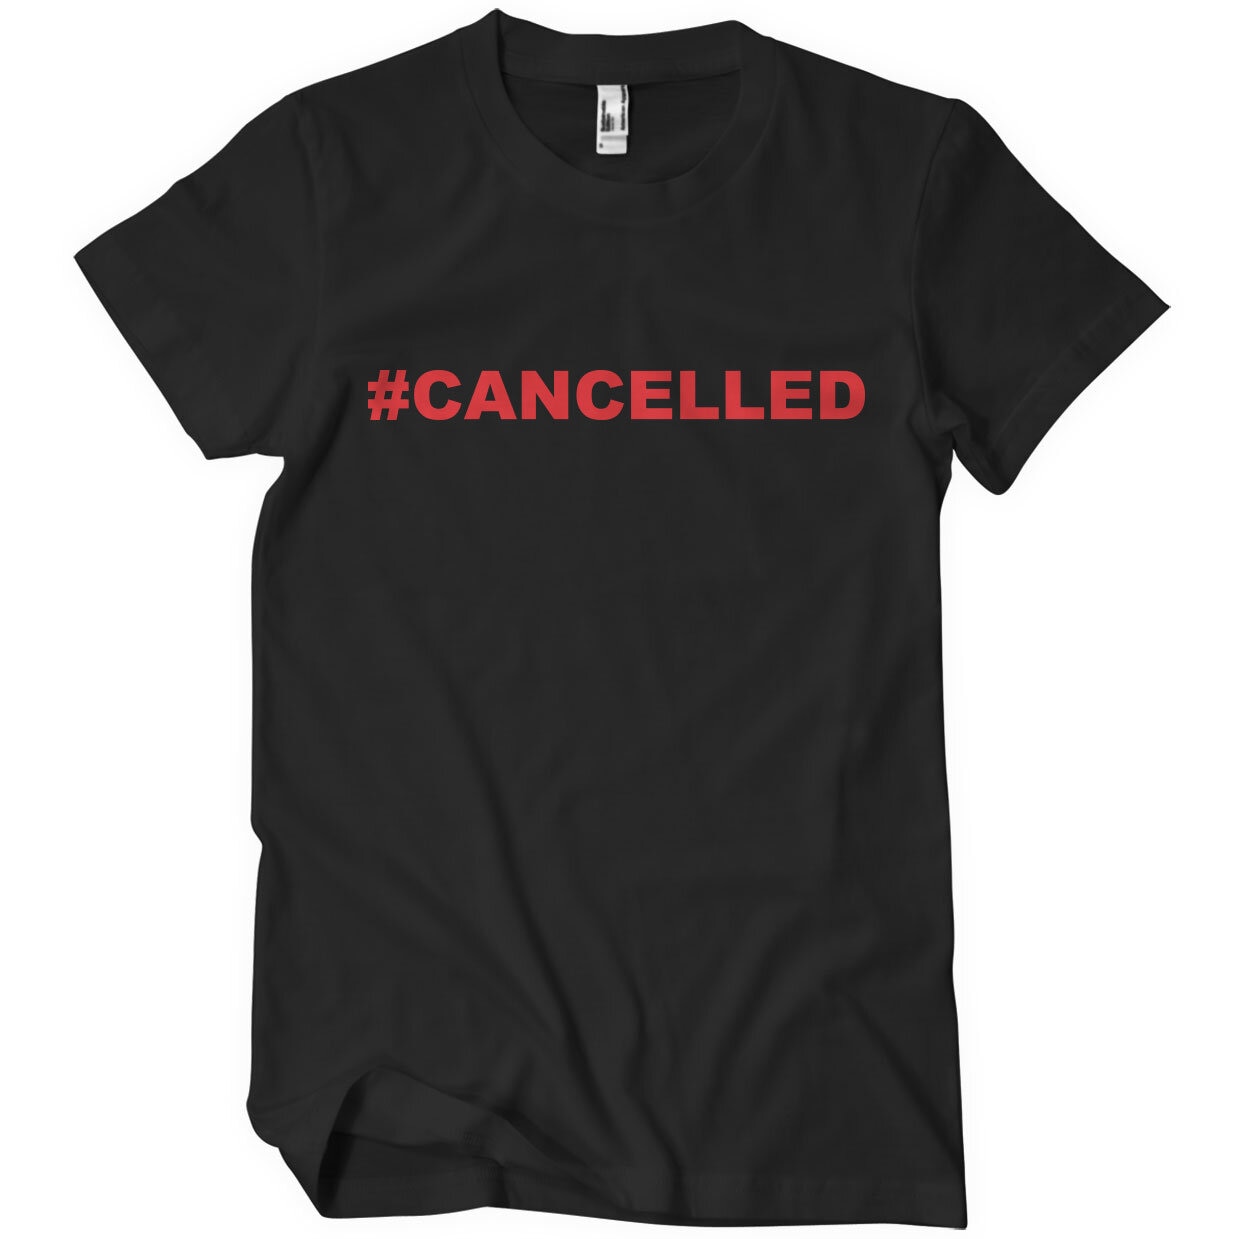 Cancelled T-Shirt